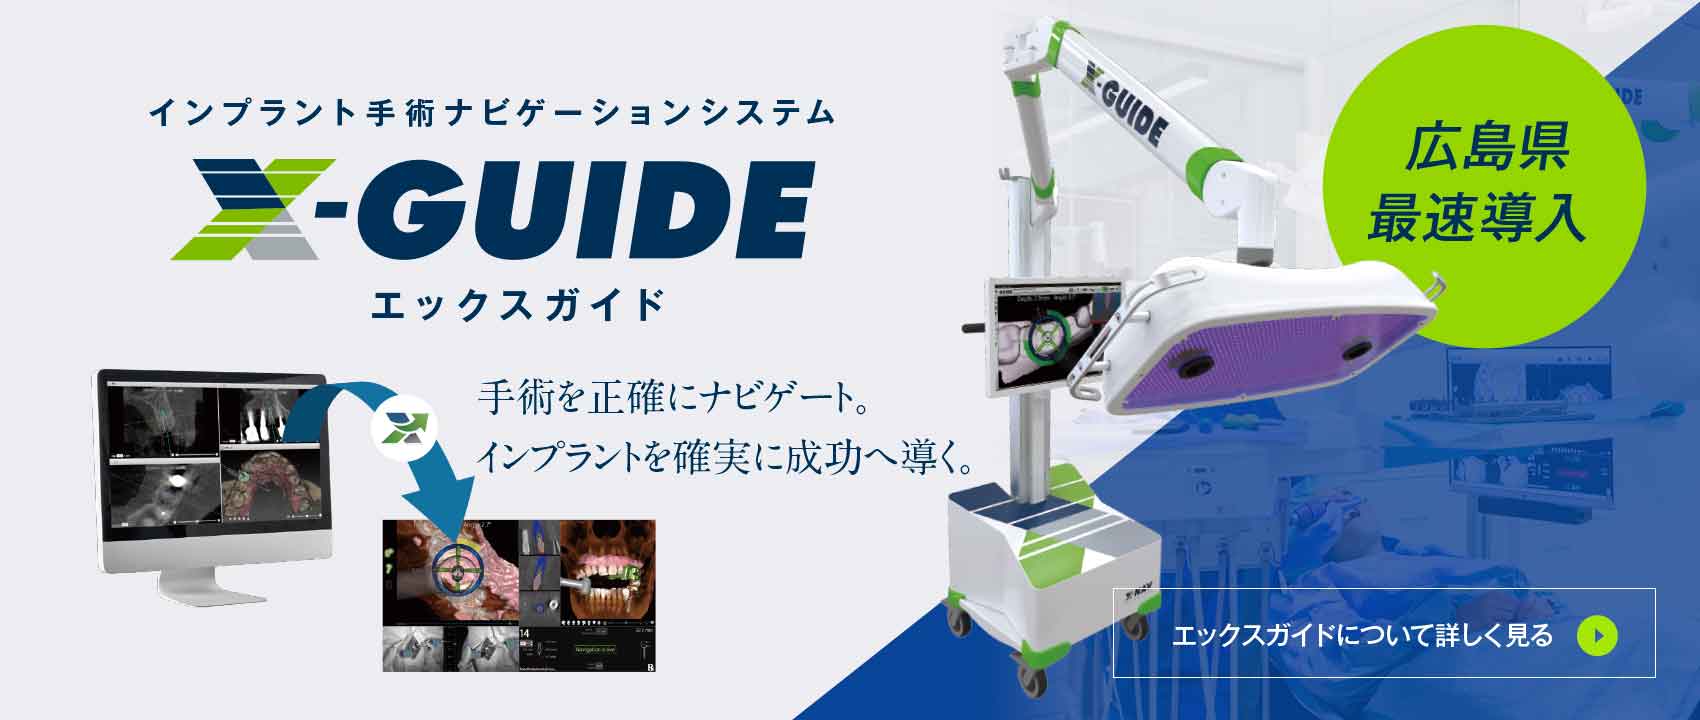 広島県最速導入 X-Guide インプラント手術ナビゲーションシステム